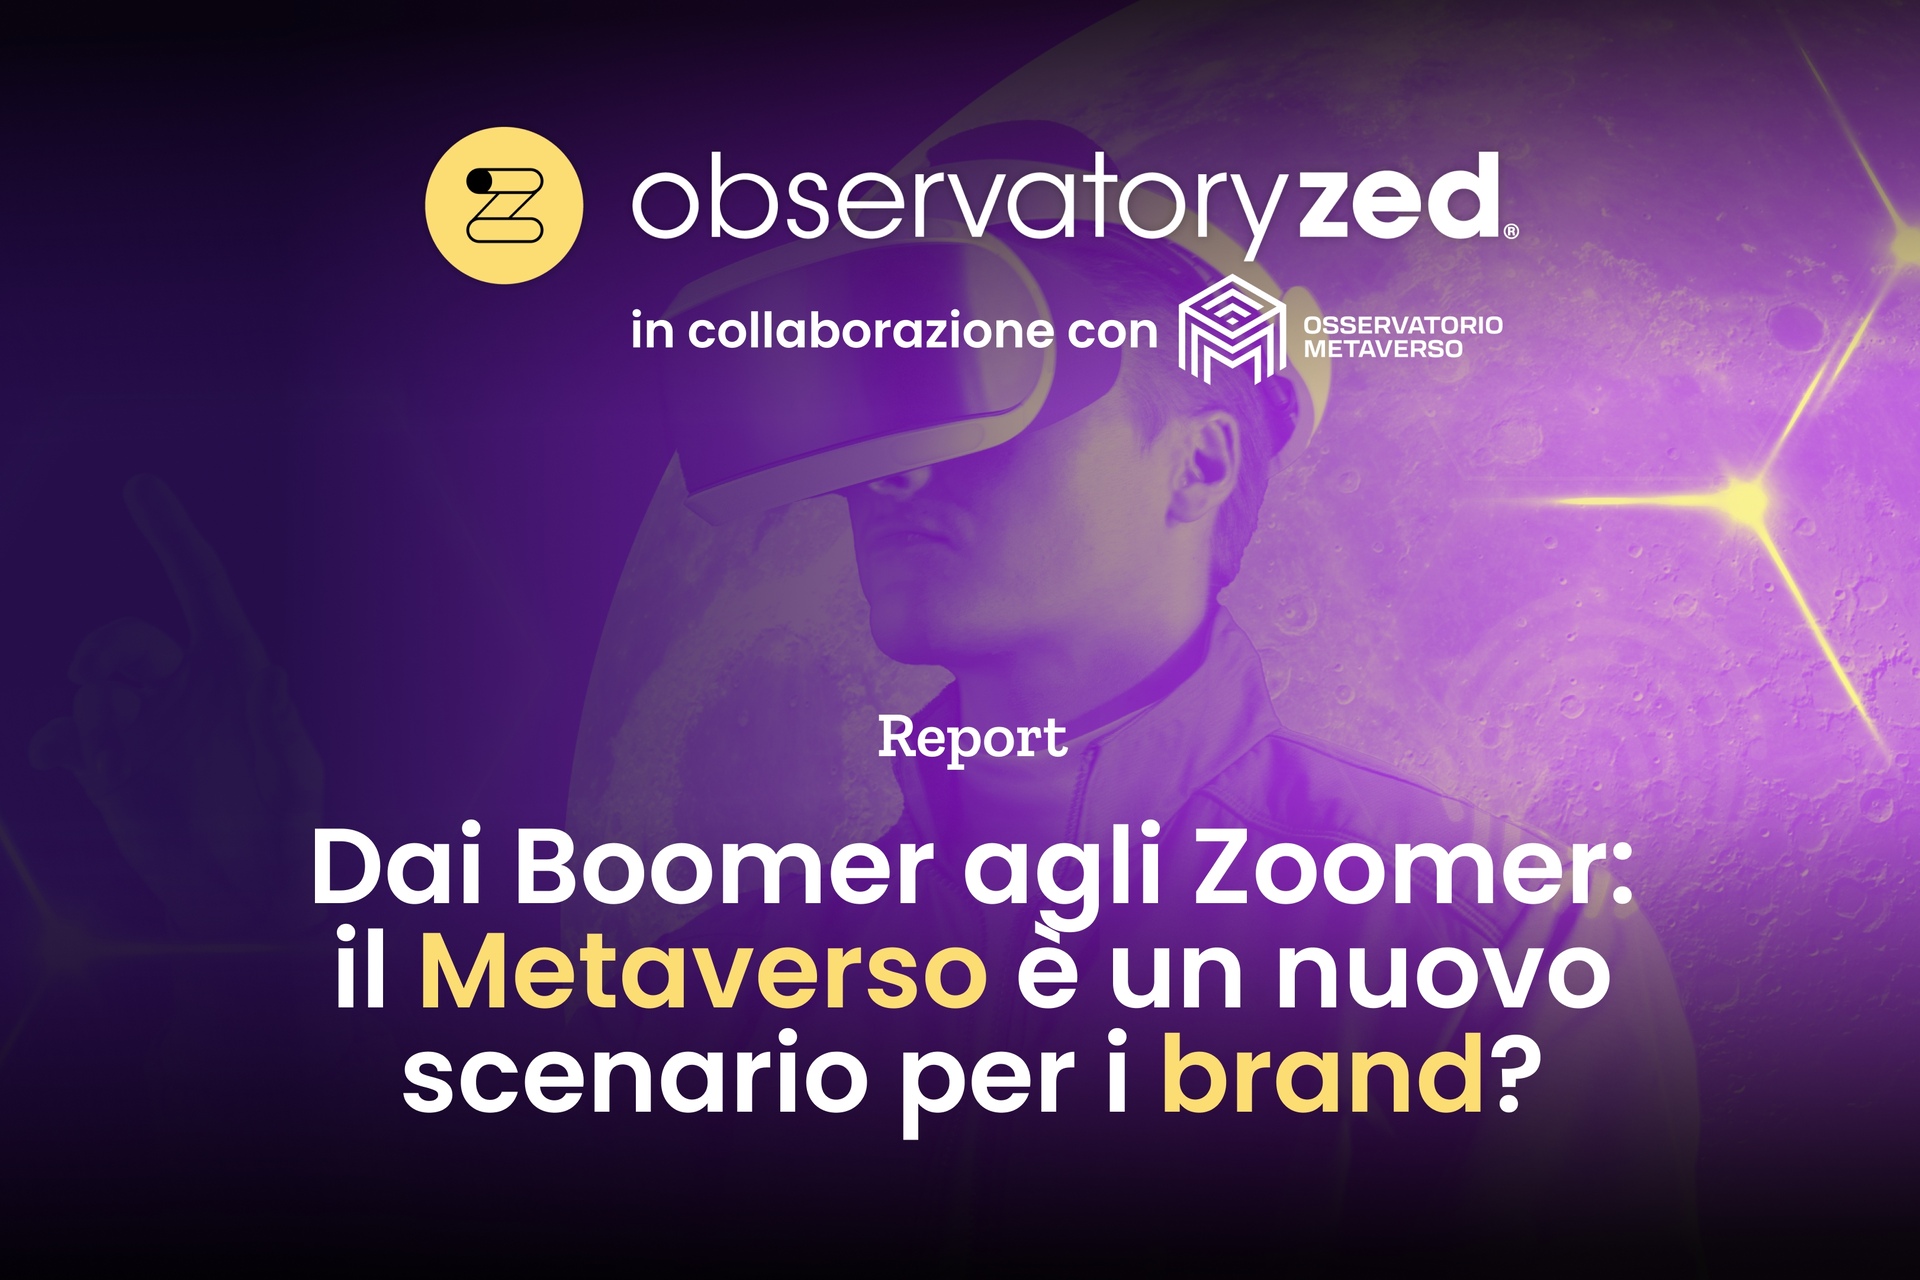 Social: la copertina del rapporto “Dai Boomer agli Zoomer: il Metaverso è un nuovo scenario per i brand?” di ObservatoryZed, il primo Osservatorio sulla Generazione Z del gruppo CreationDose, in collaborazione con l’Osservatorio Metaverso, il primo che studia l’evoluzione di Internet verso mondi tridimensionali immersivi